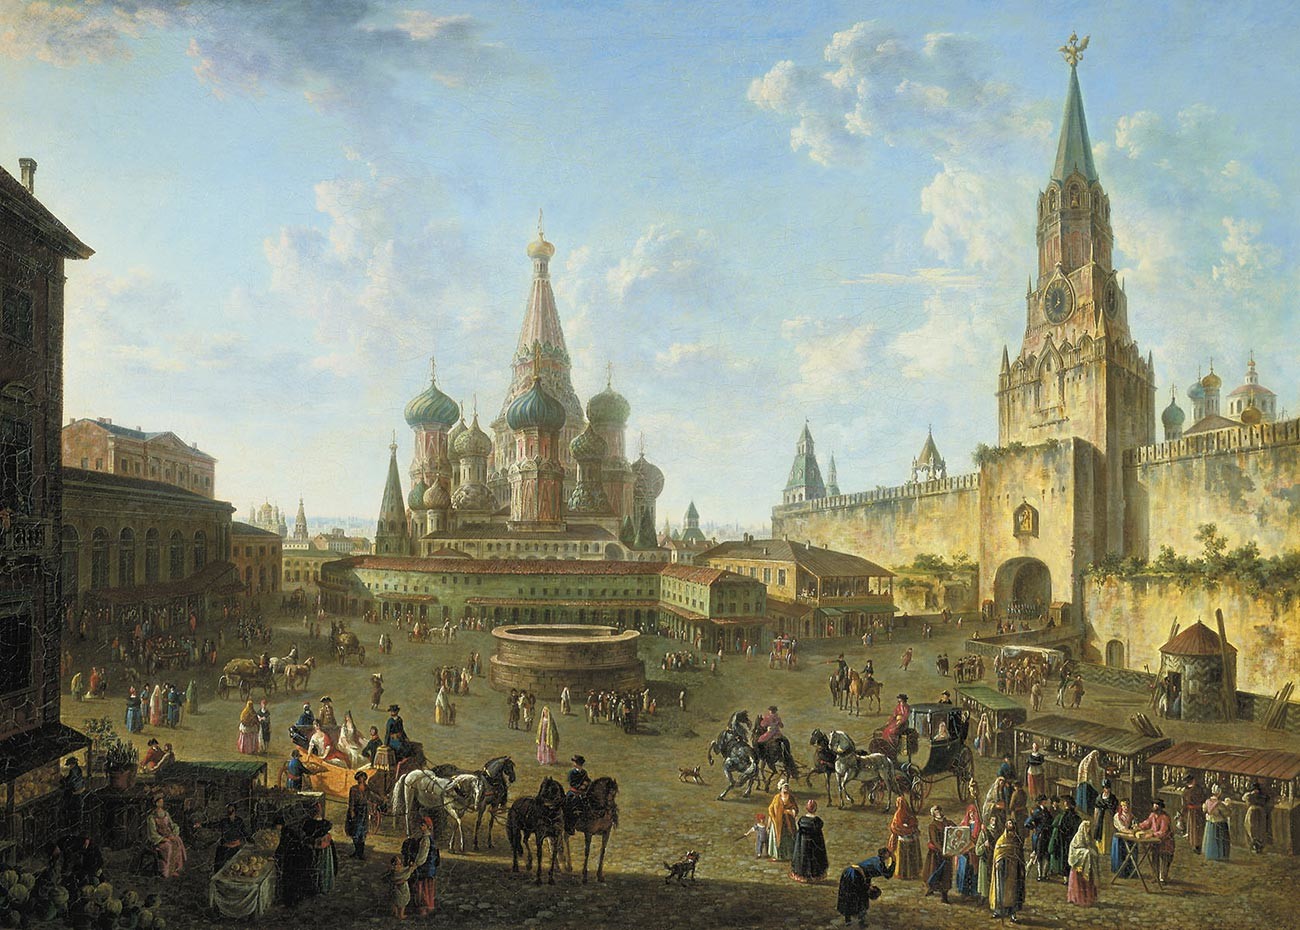 La Plaza Roja de Moscú, siglo XIX, por Fiodor Alekseev. A la derecha, todavía se puede ver el foso, donde probablemente se guardaban leones y elefantes en el siglo XVI.
